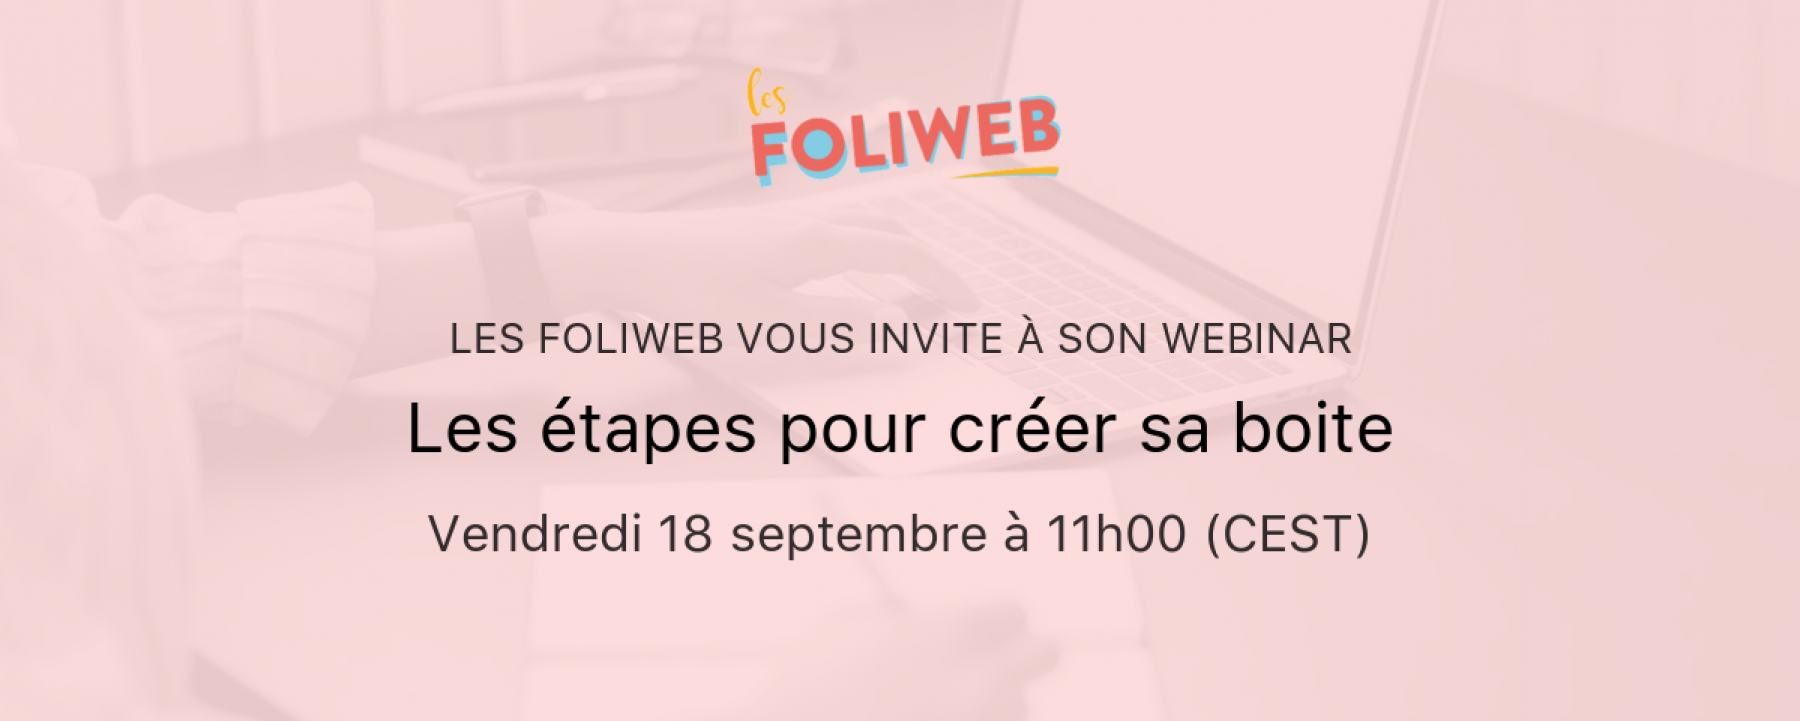 Webinar Les étapes pour créer sa boîte, le 18 septembre 2020, organisé par Les Foliweb